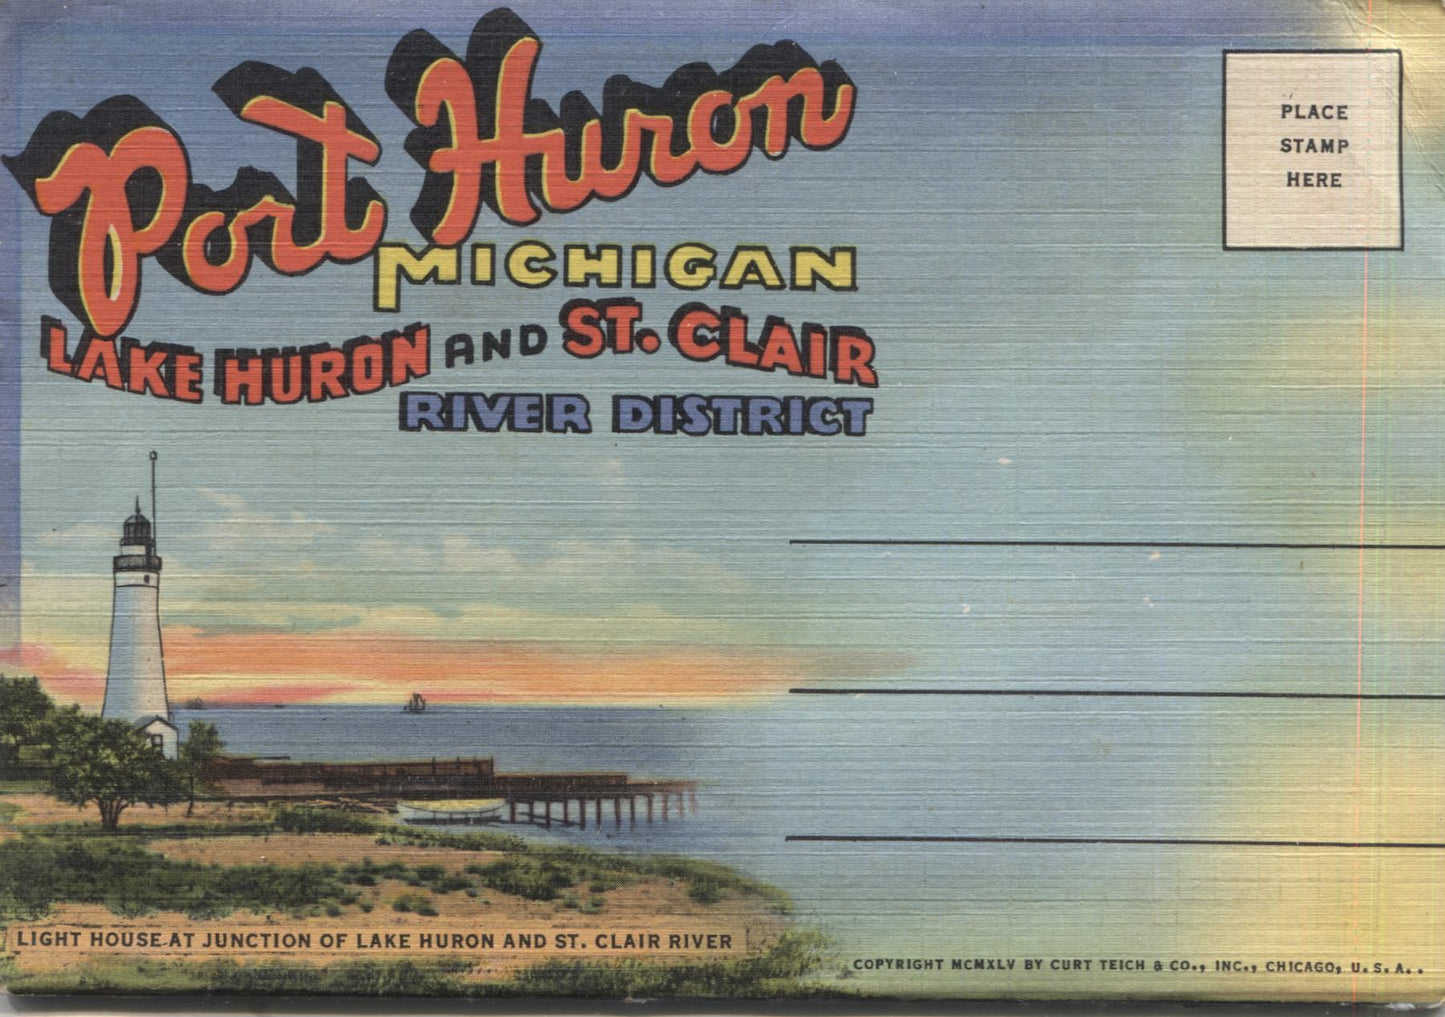 Port Huron, Michigan Vintage Souvenir Postcard Folder